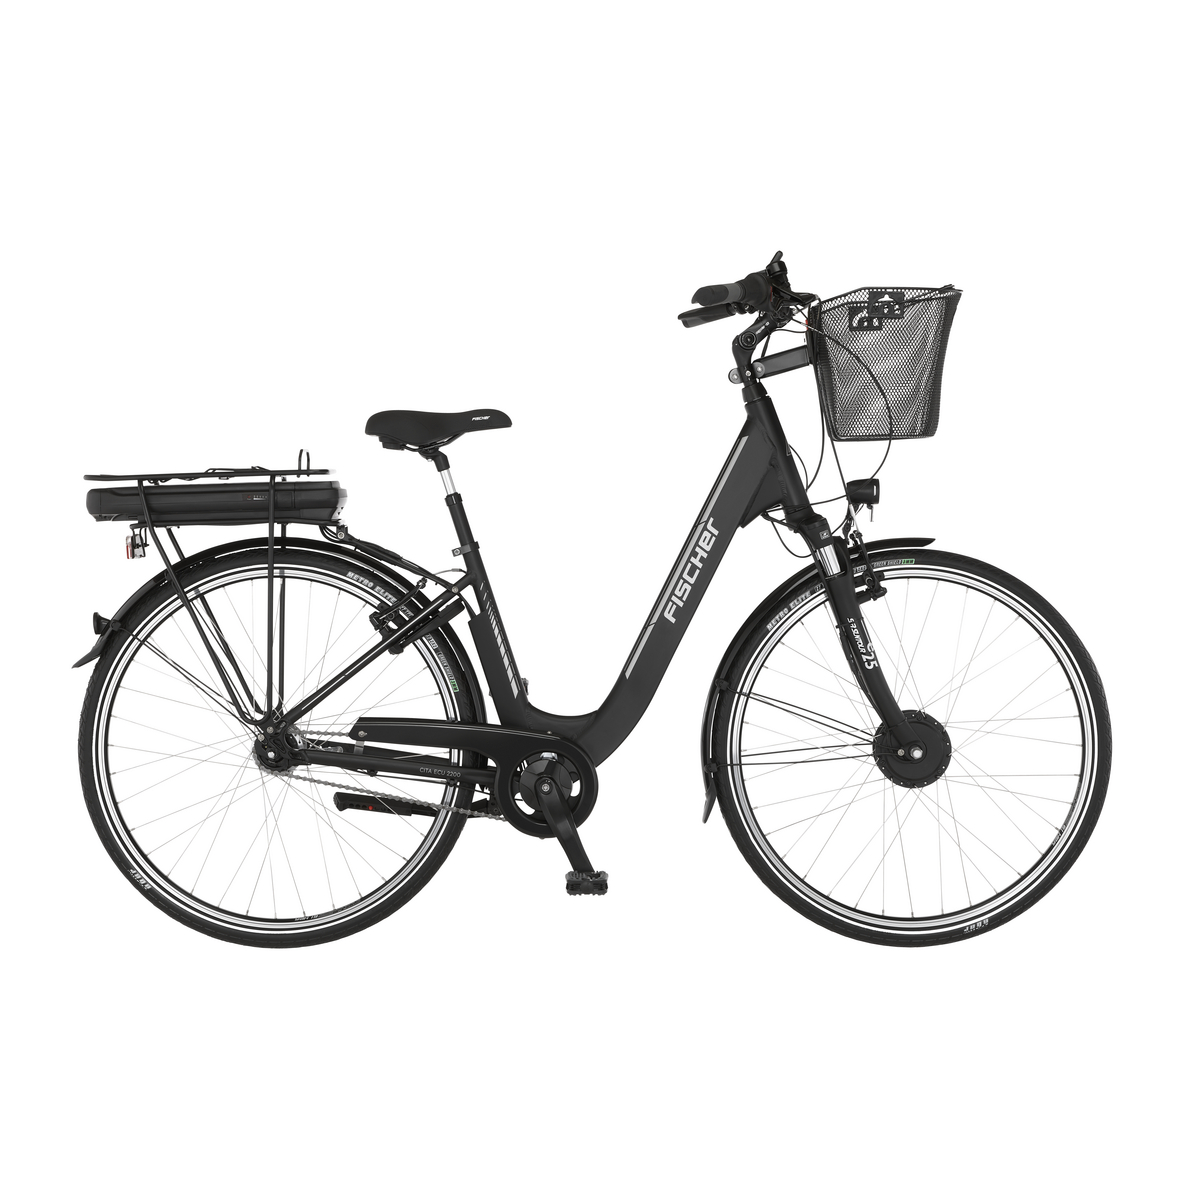 FISCHER CITA ECU 2200 E-Bike - schwarz matt, 28 Zoll, RH 44 cm